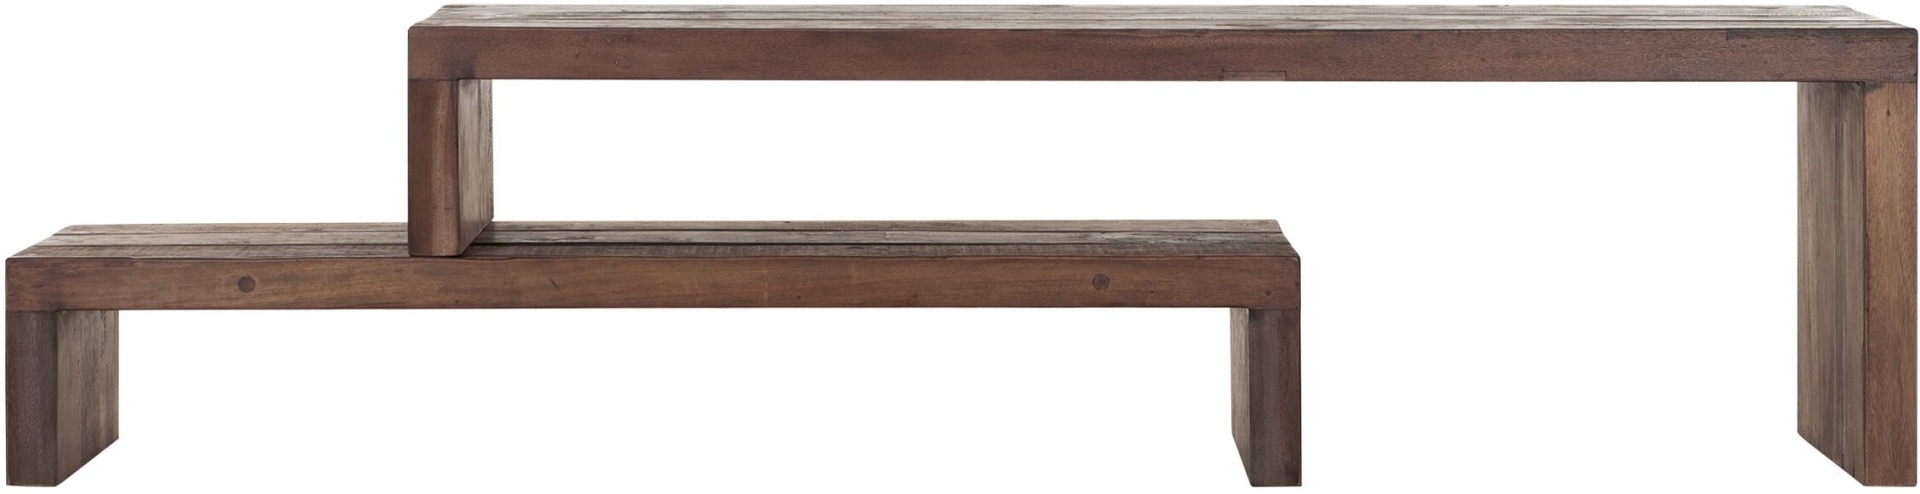 Das TV-Board Timber überzeugt mit seinem massivem aber auch modernem Design. Gefertigt wurde es aus verschiedenen Holzarten, welche einen natürlichen Farbton besitzen. Das TV Board besitzt eine Länge von 150 cm und ist ausziehbar.